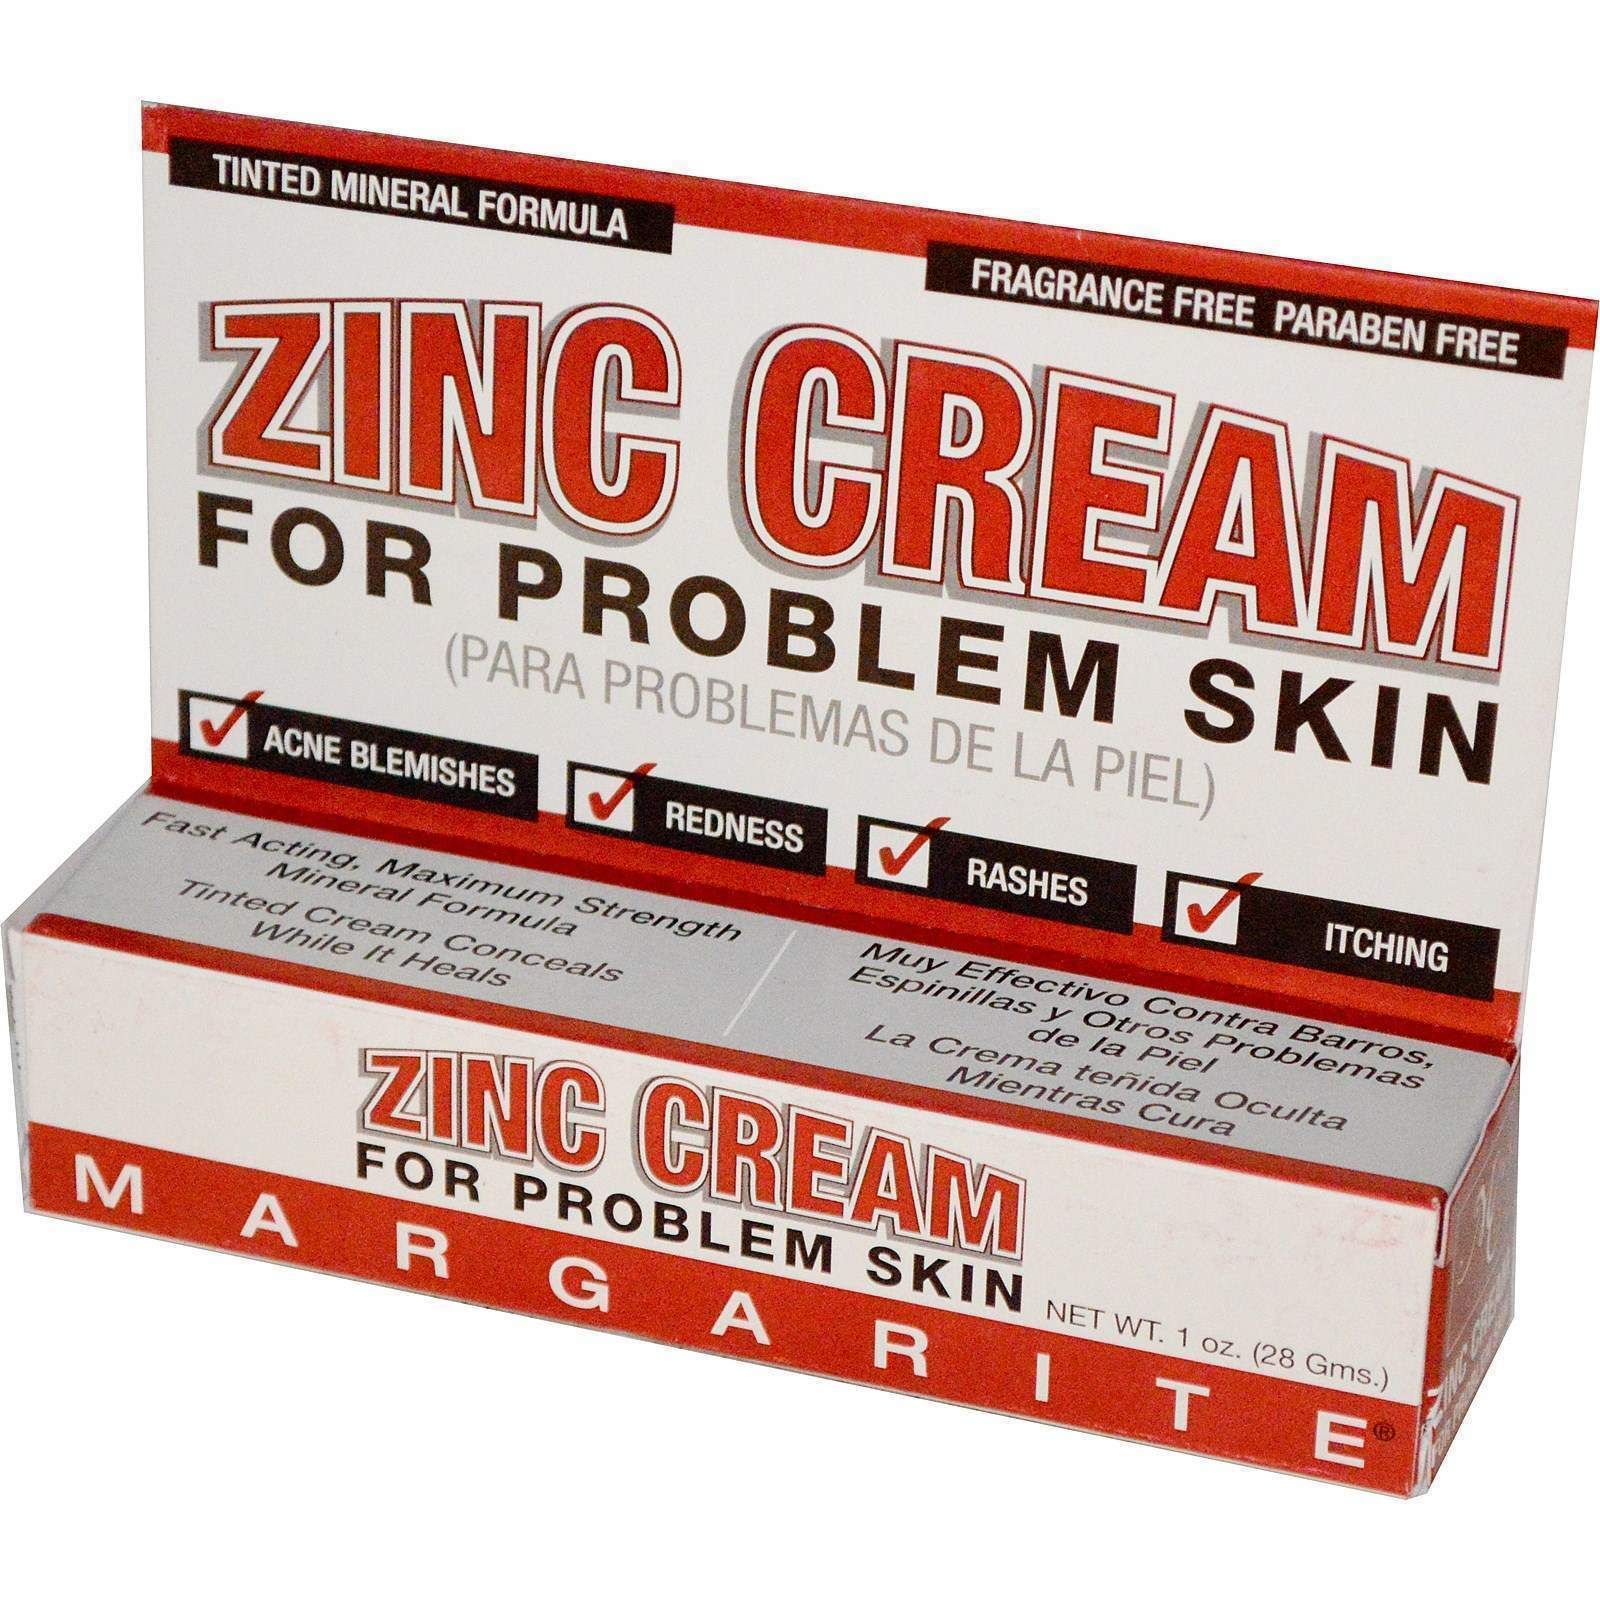 Купить цинк крем. Margarite Cosmetics, Zinc Cream. Крем с цинком. Zinc Cream for problem Skin. Цинк 10 крем.